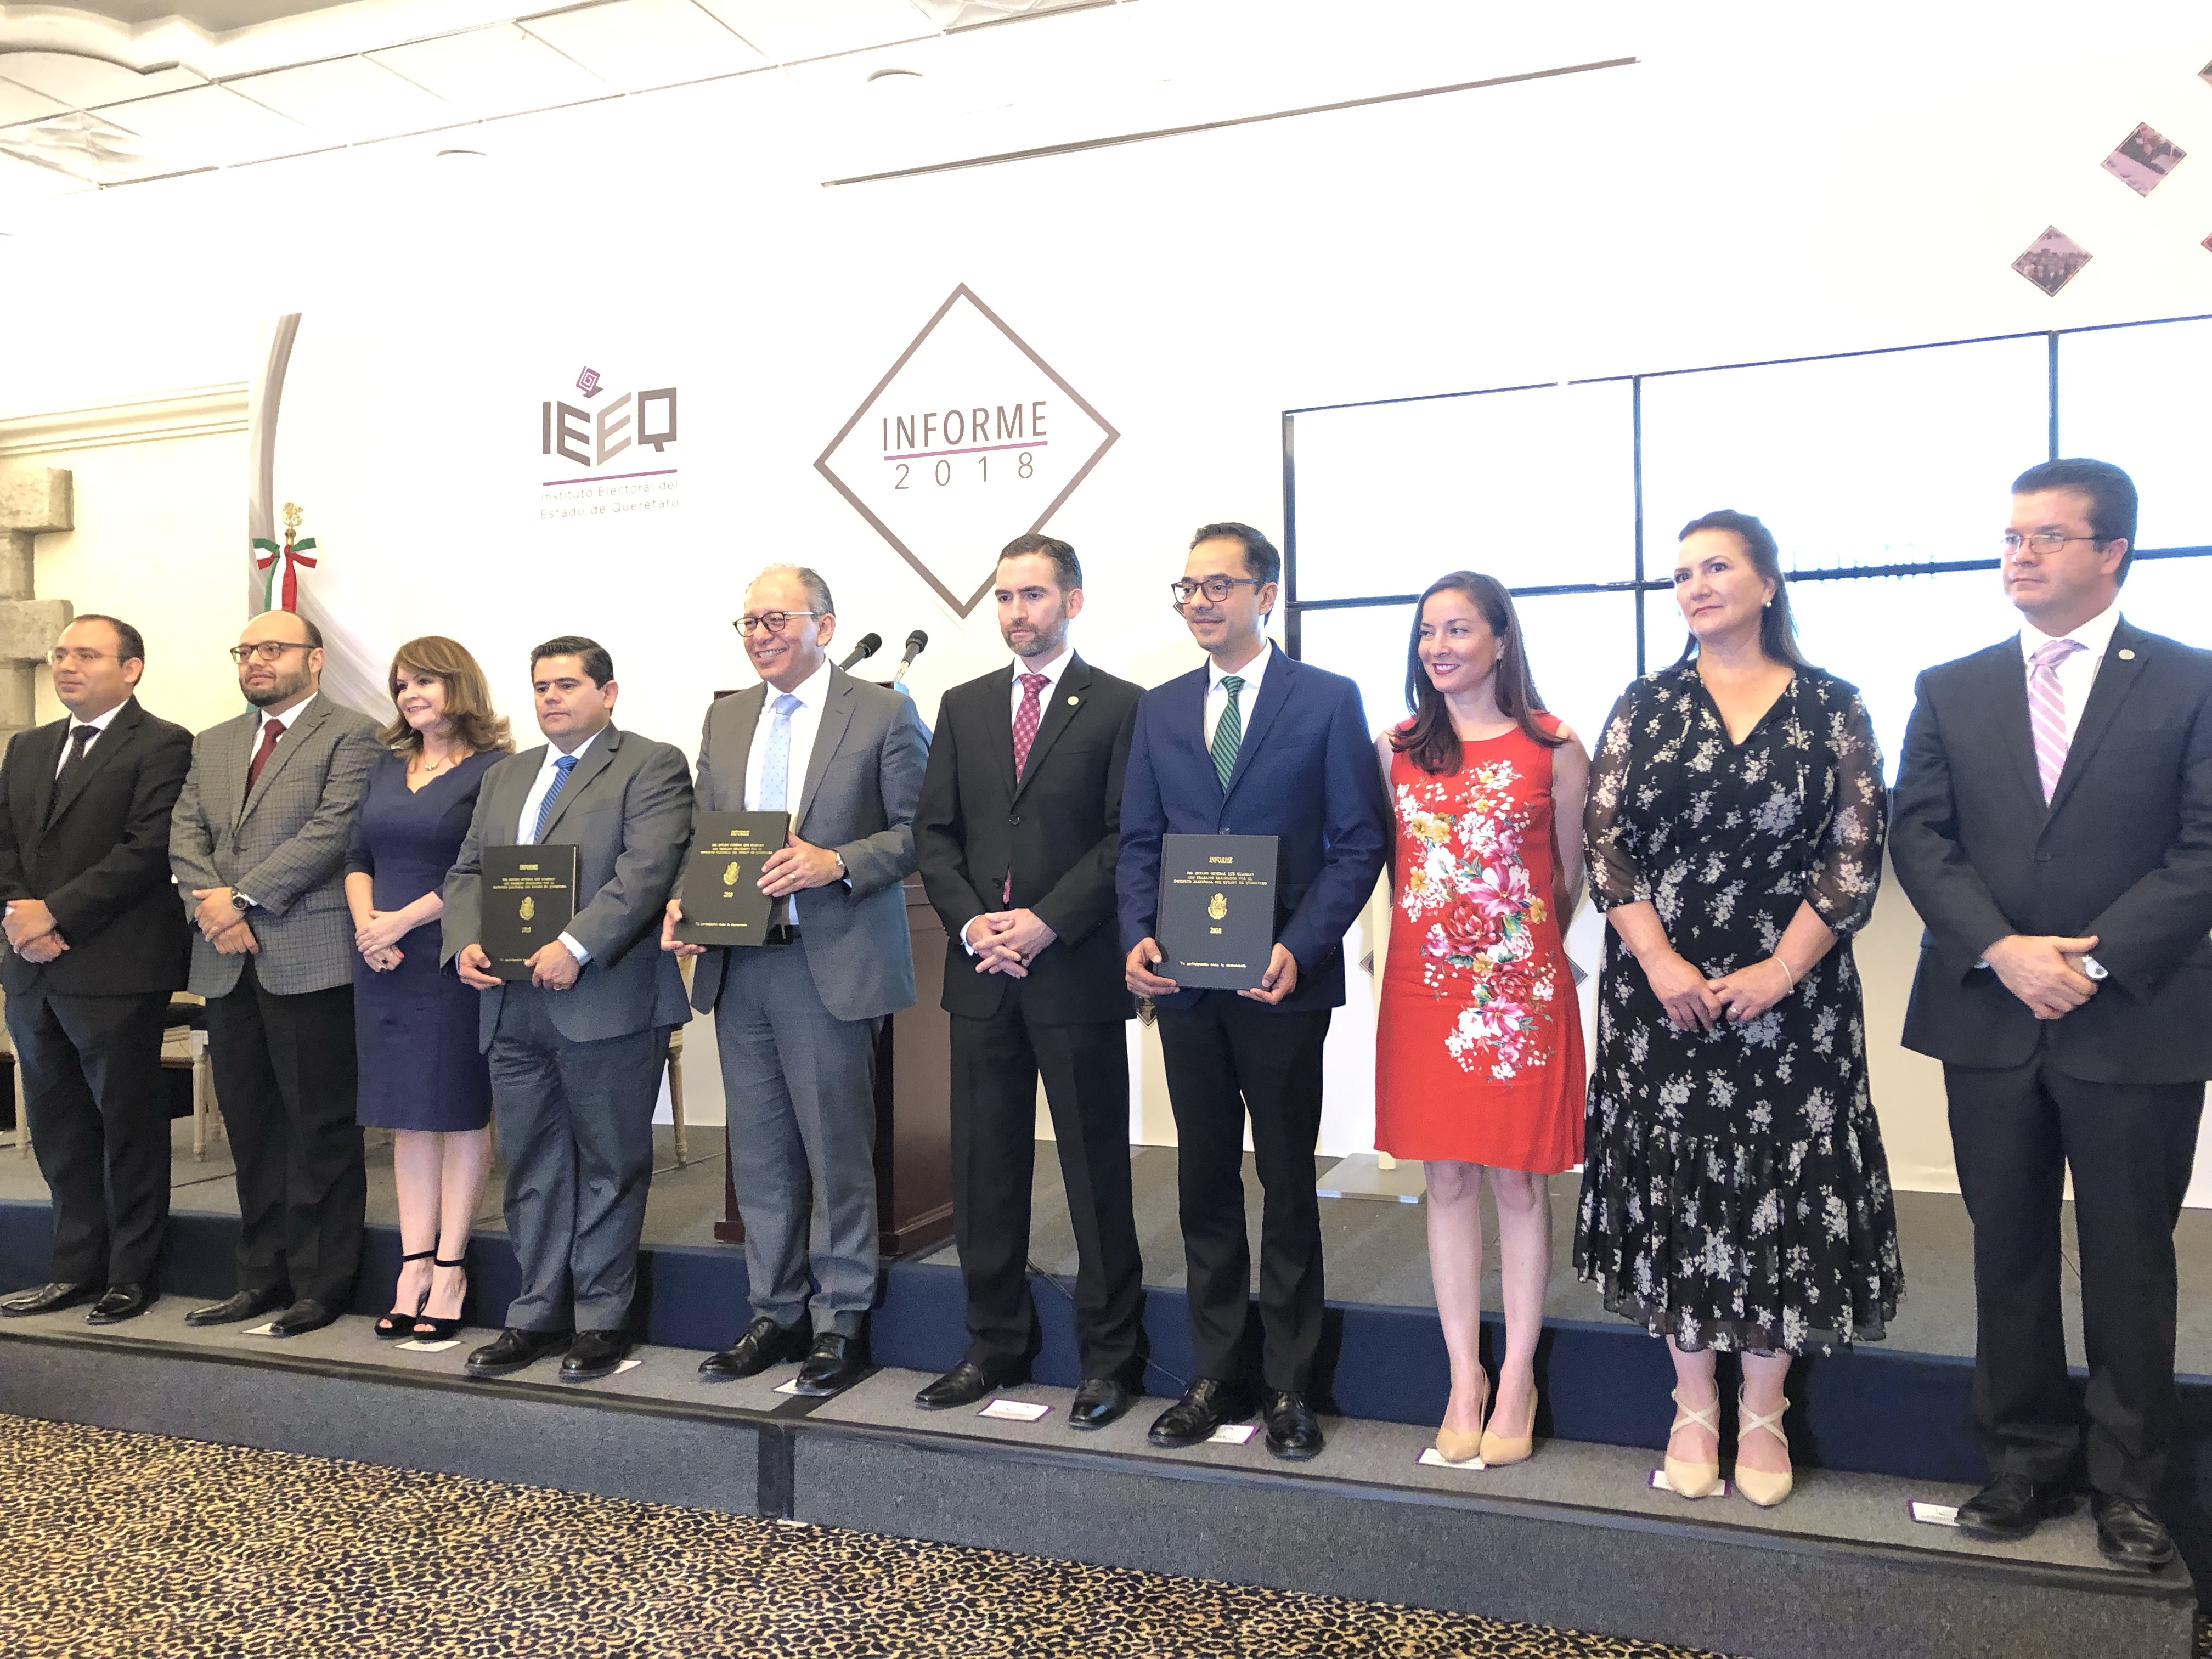  Presidente del IEEQ destaca “buen trabajo” de Querétaro durante elección de 2018